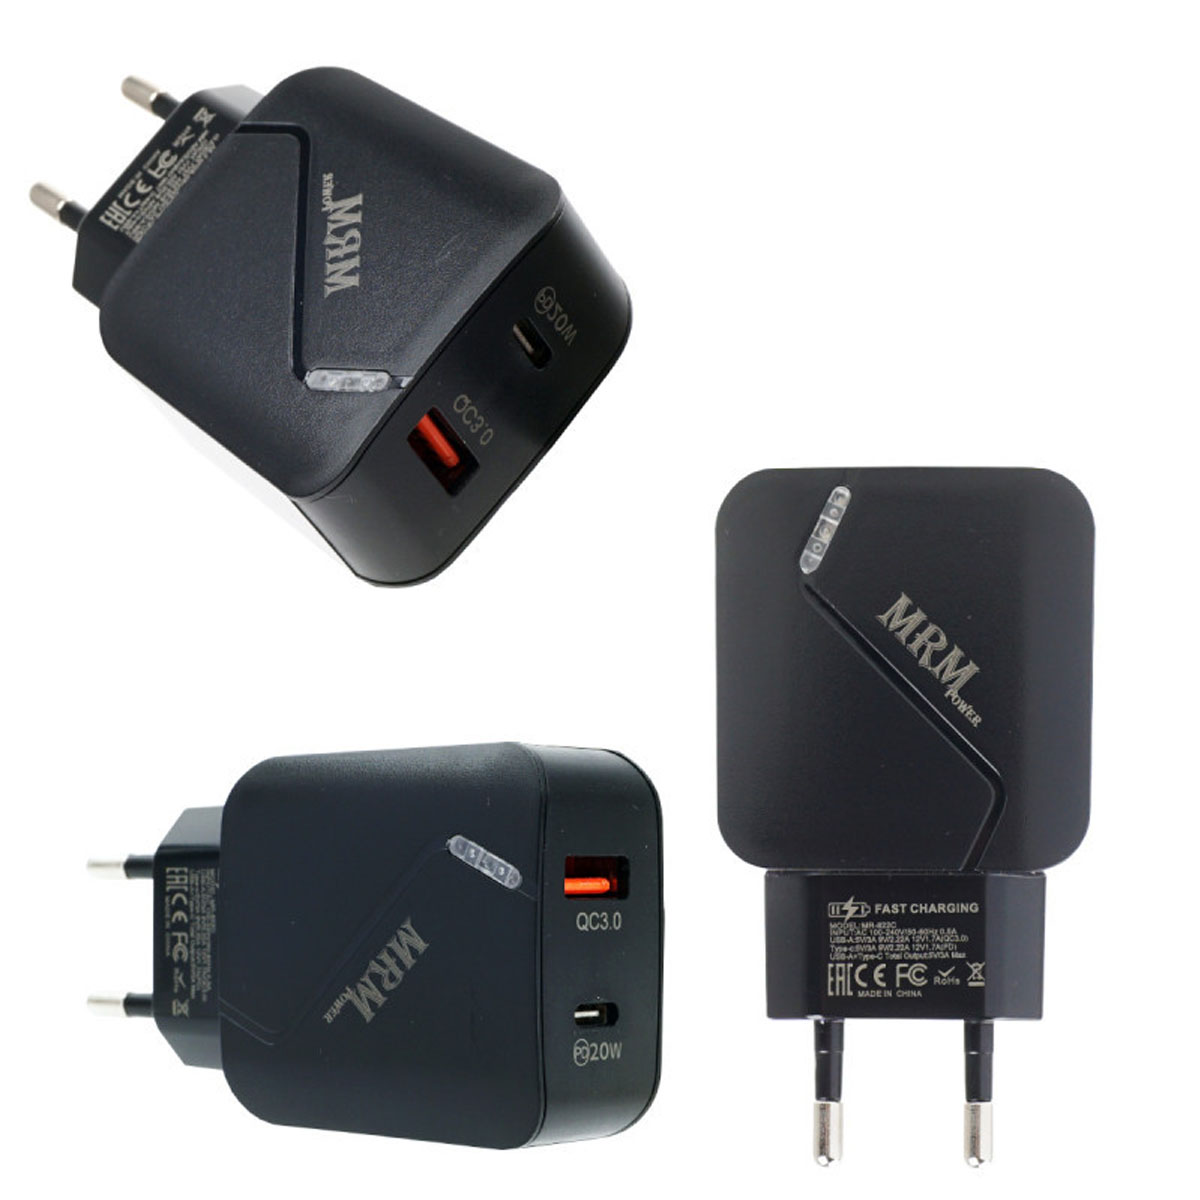 СЗУ (Сетевое зарядное устройство) MR-822C, 20W, 1 USB Type C, 1 USB, цвет черный